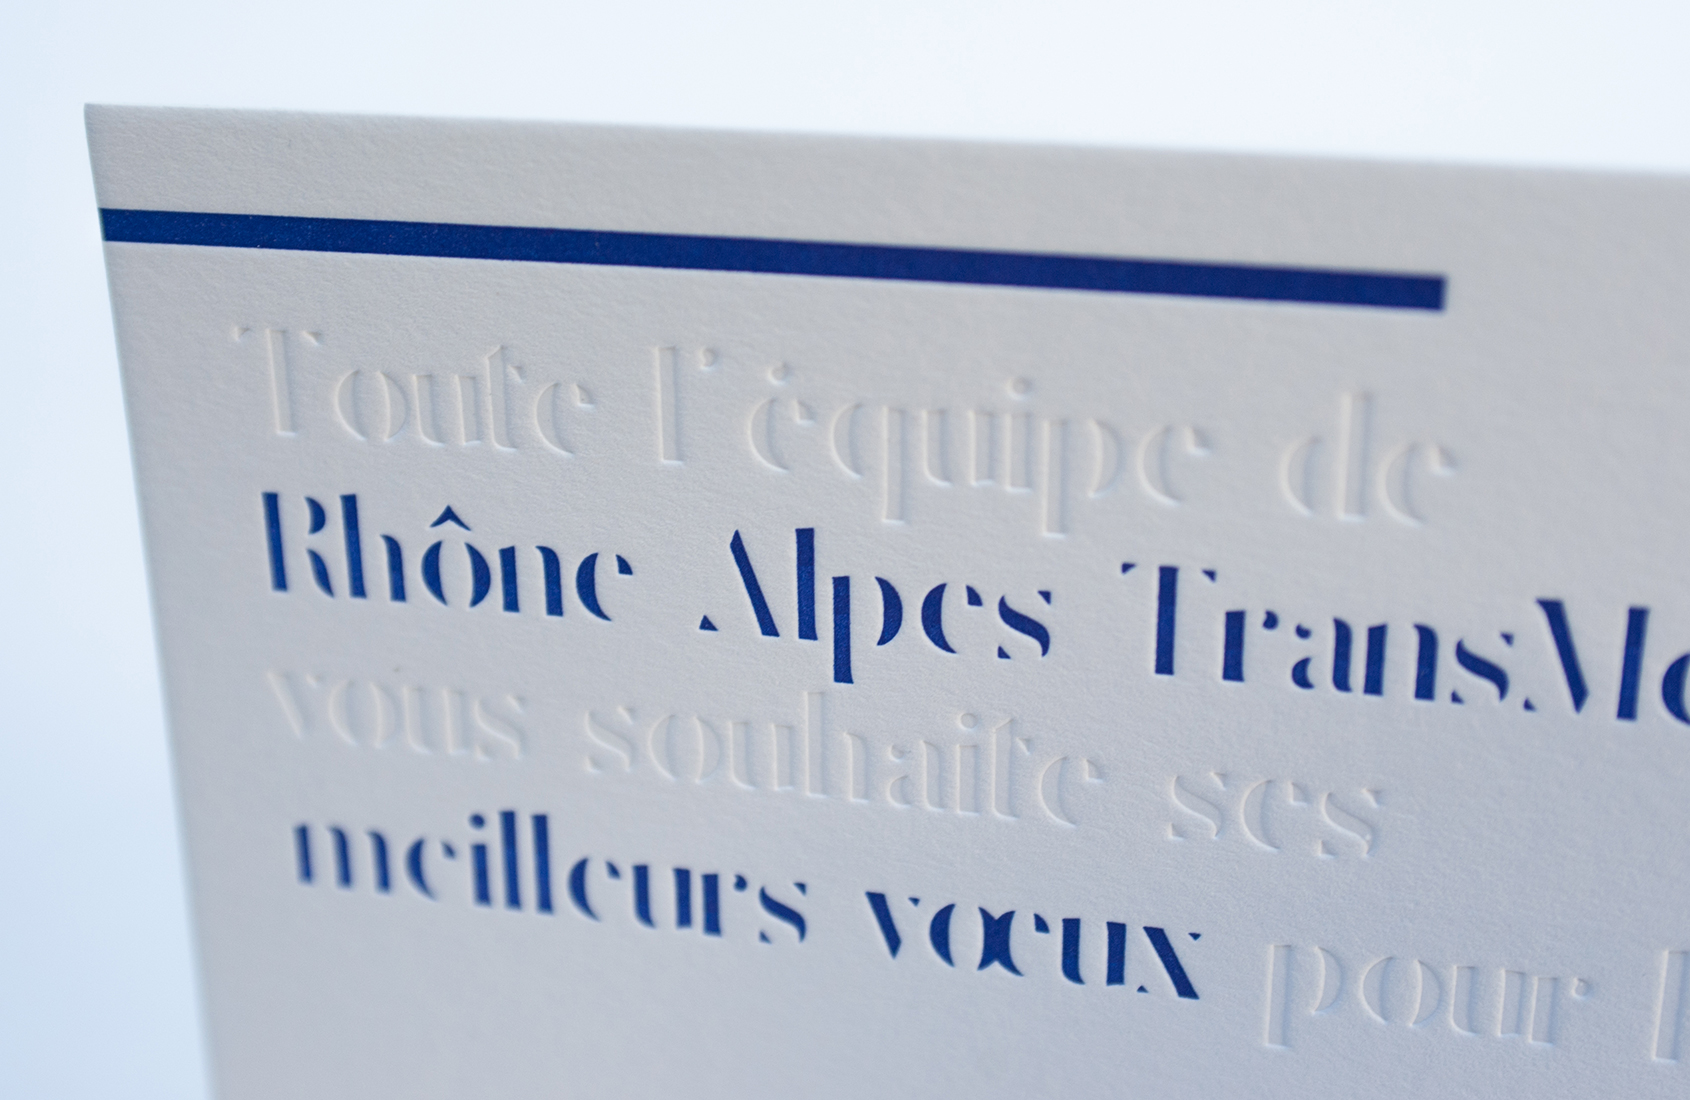 Carte de voeux letterpress réalisée pour Rhône Alpes TransMed, impression une couleur plus débossage à sec.